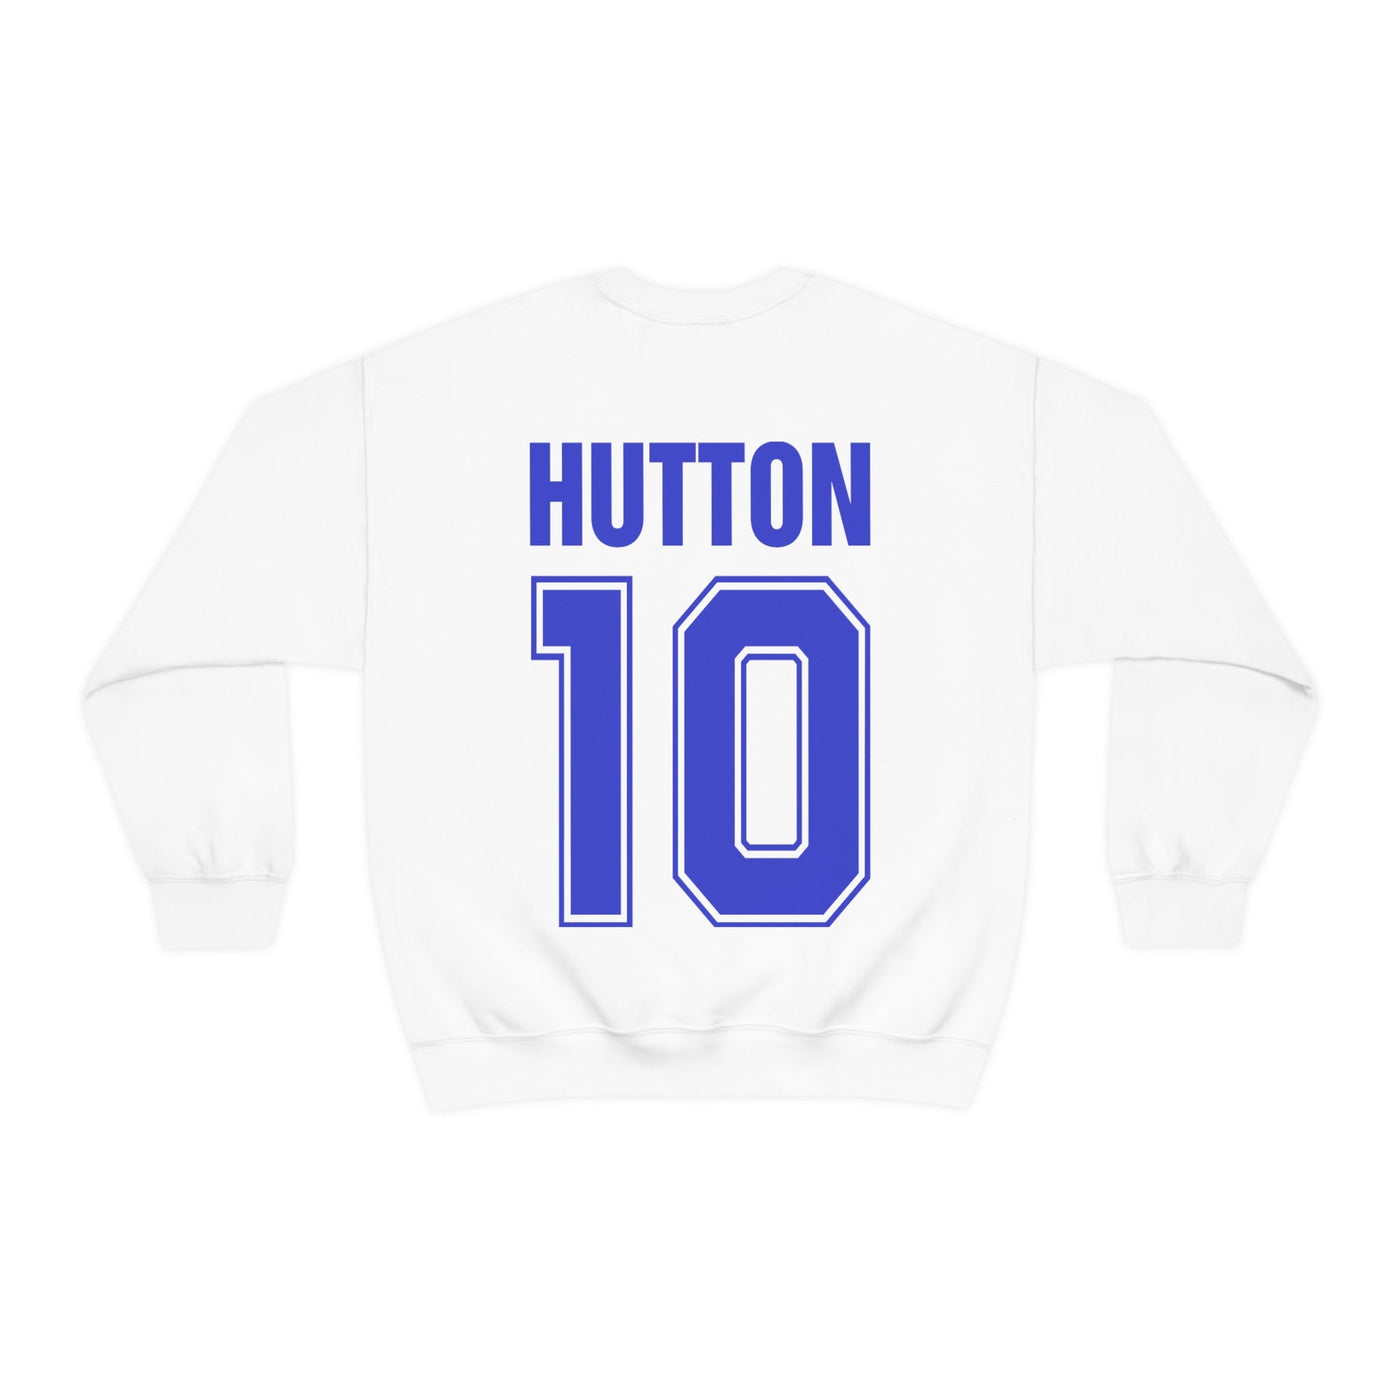 Captain Tsubasa New Team, Benji price - Oliver Hutton | Cosplay Fashion Sweatshirt